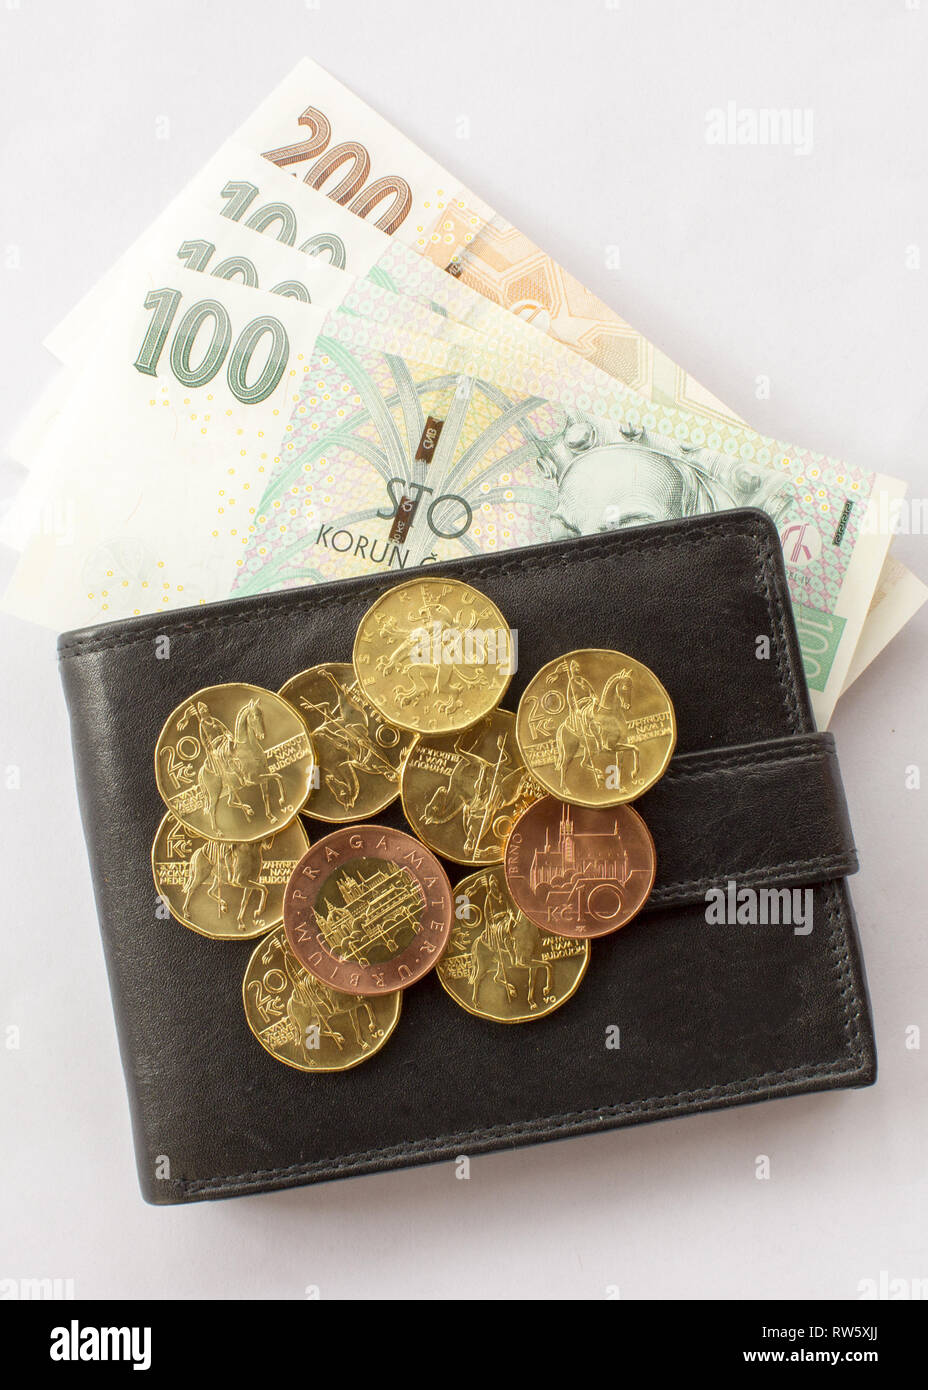 Tschechische Münze auf den verschiedenen tschechischen Banknoten Geld mit Lederetui. Hundert Kronen, zwei hundert Kronen, zwanzig Kronen Münzen, 10 Stockfoto